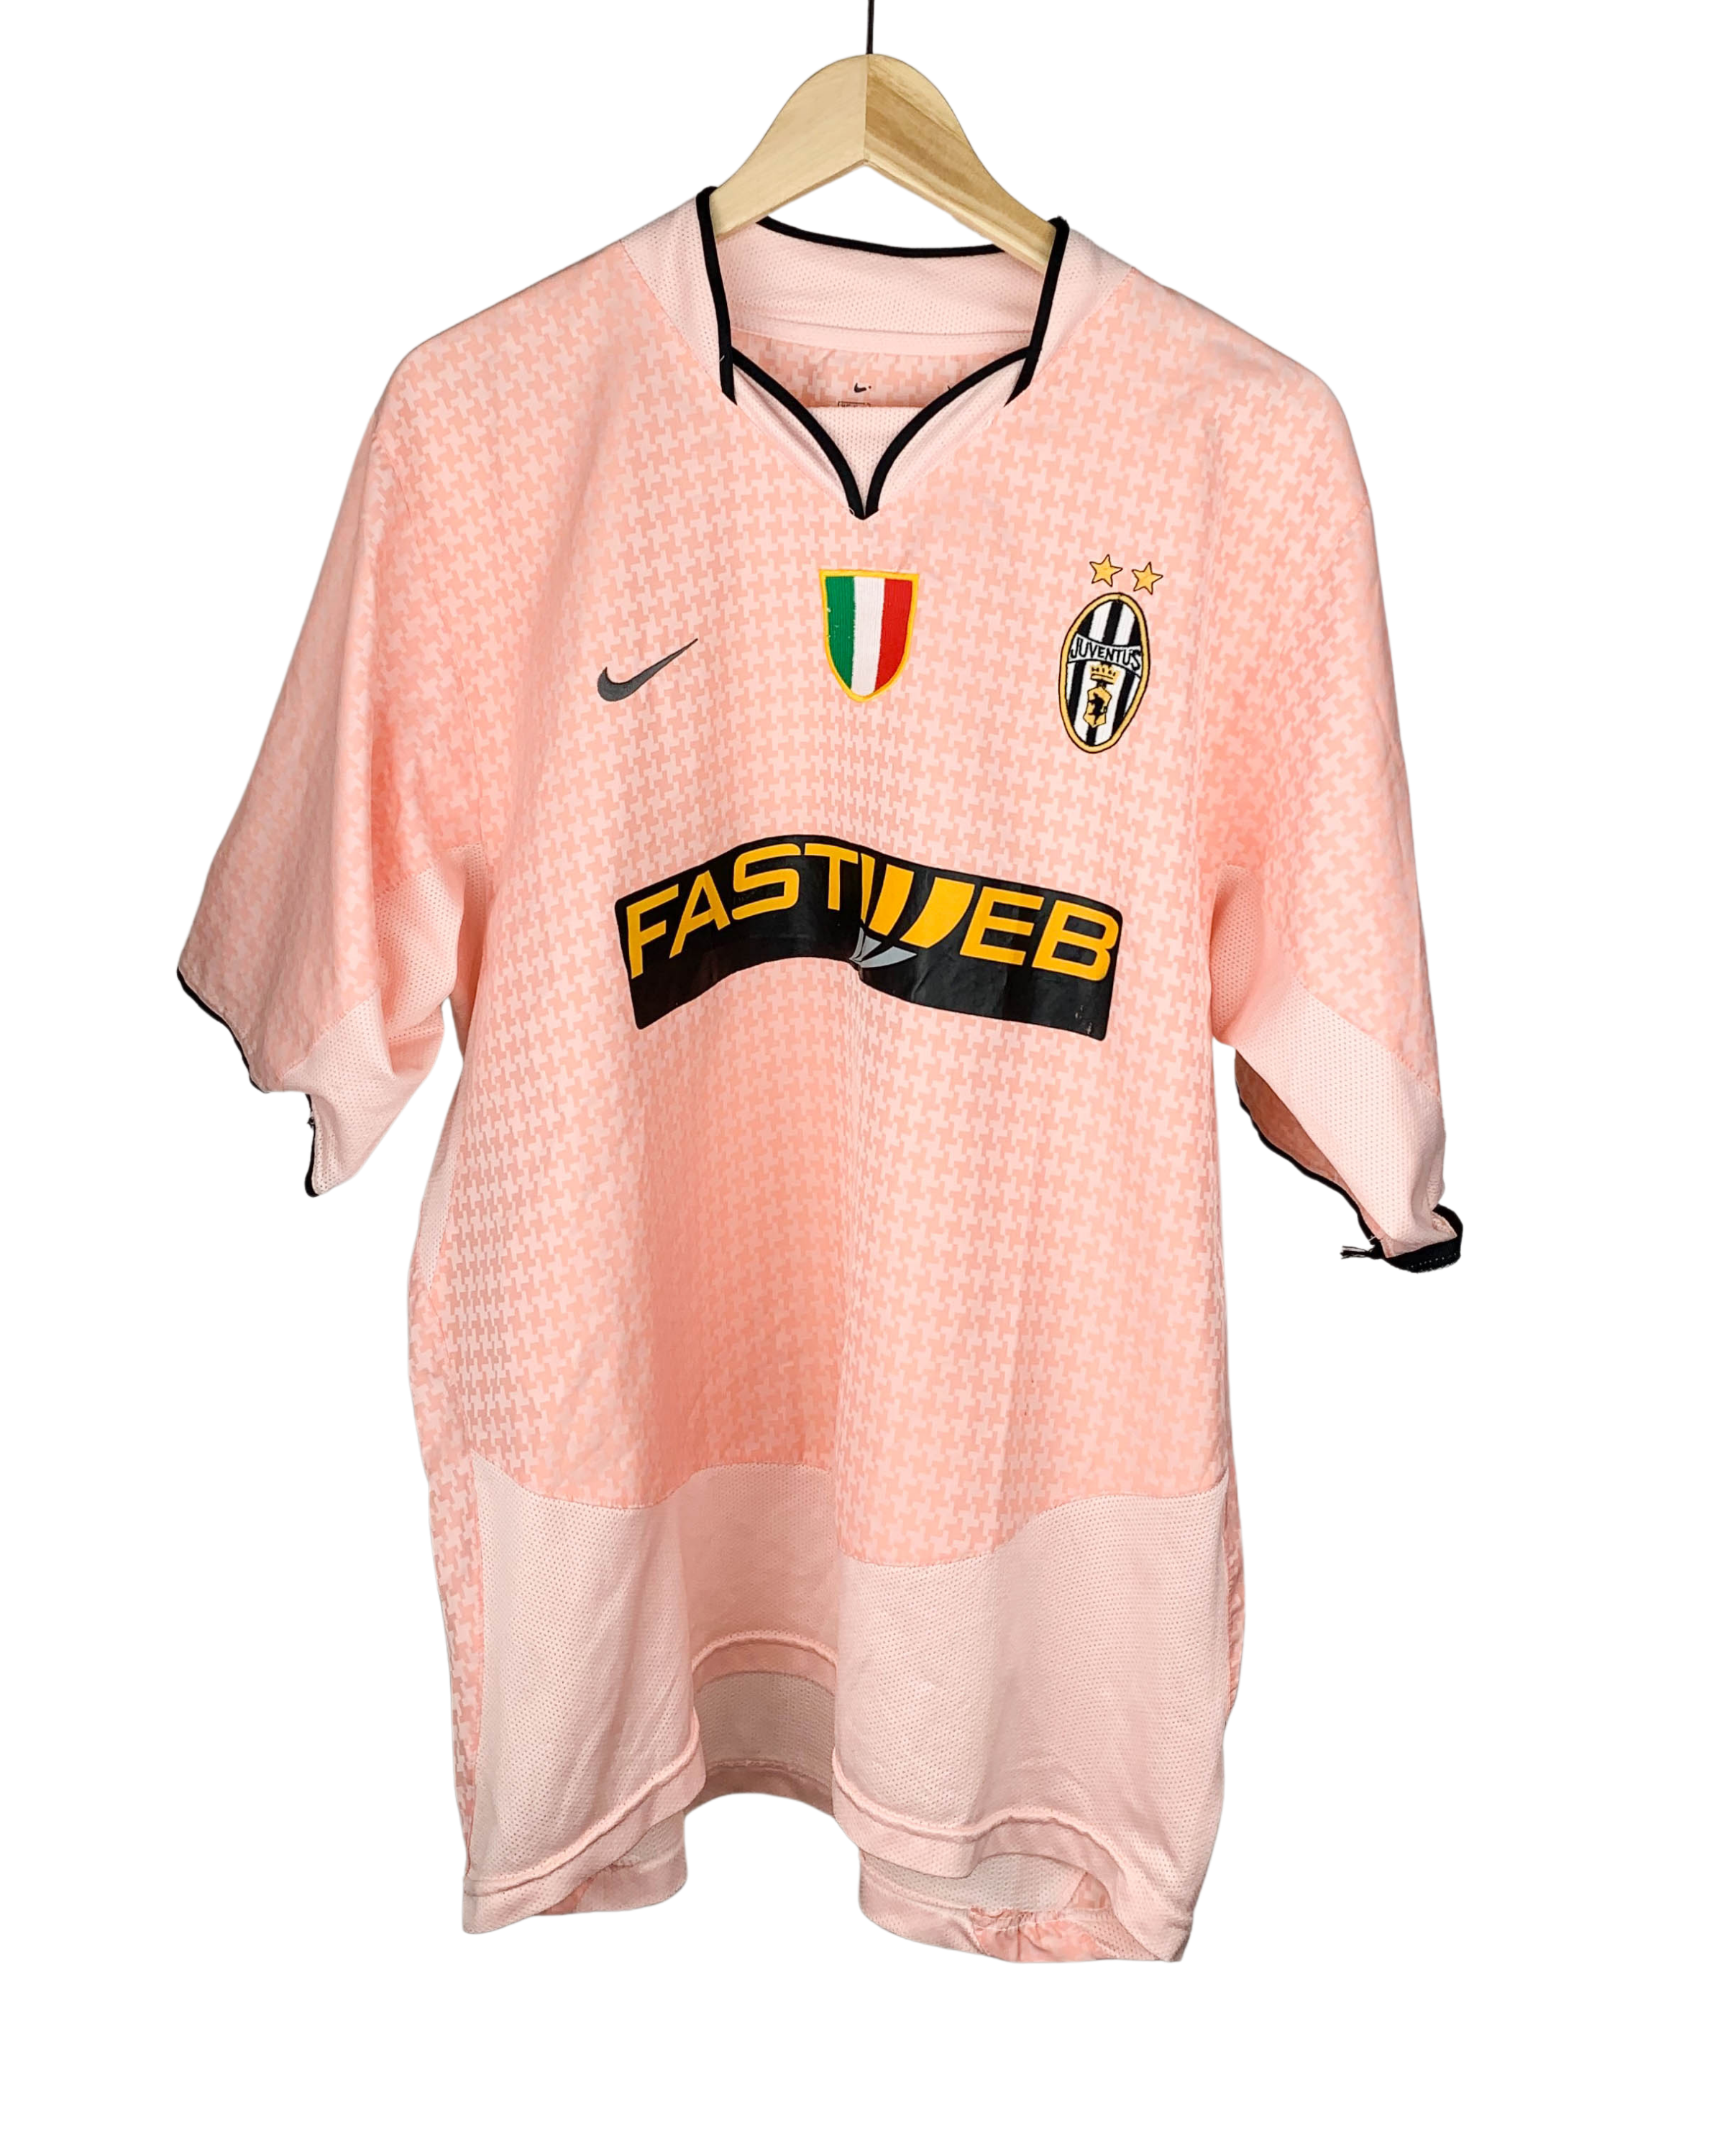 Vintage Nike Juventus 2003-2004 Away Football Jersey